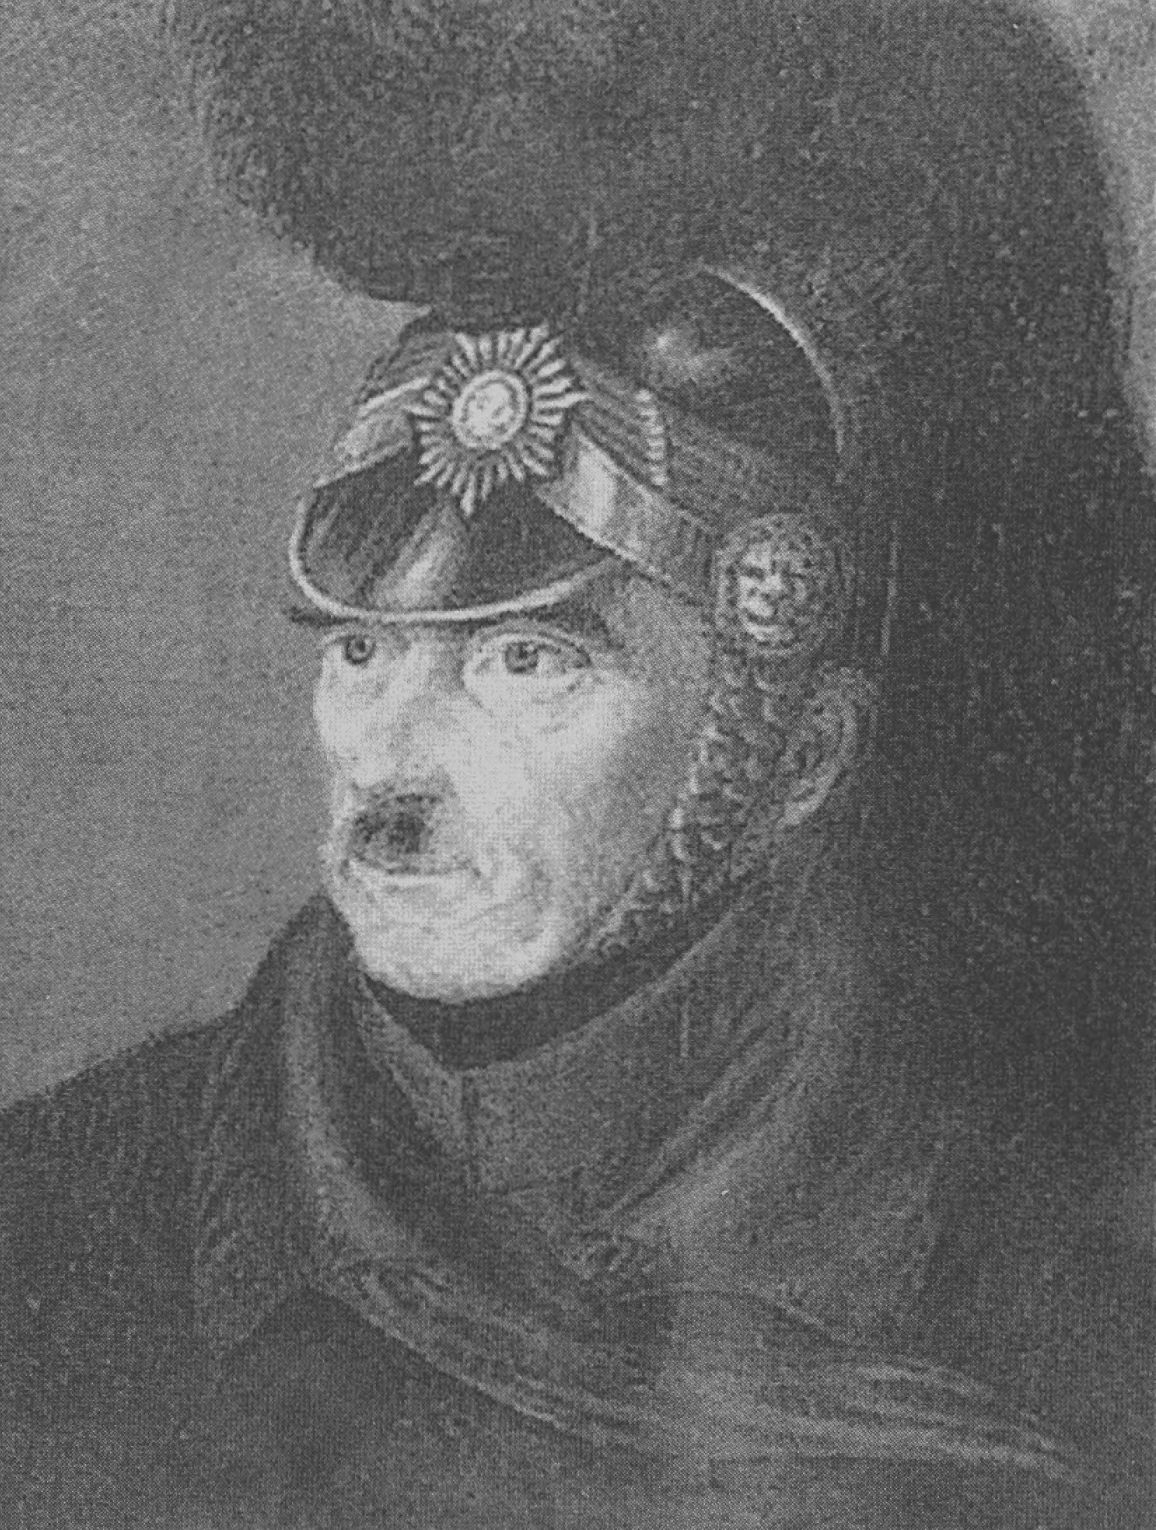 Полковник К. Хёг-Гульдберг, командир гарнизона Оденсе, один из первых покровителей Андерсена